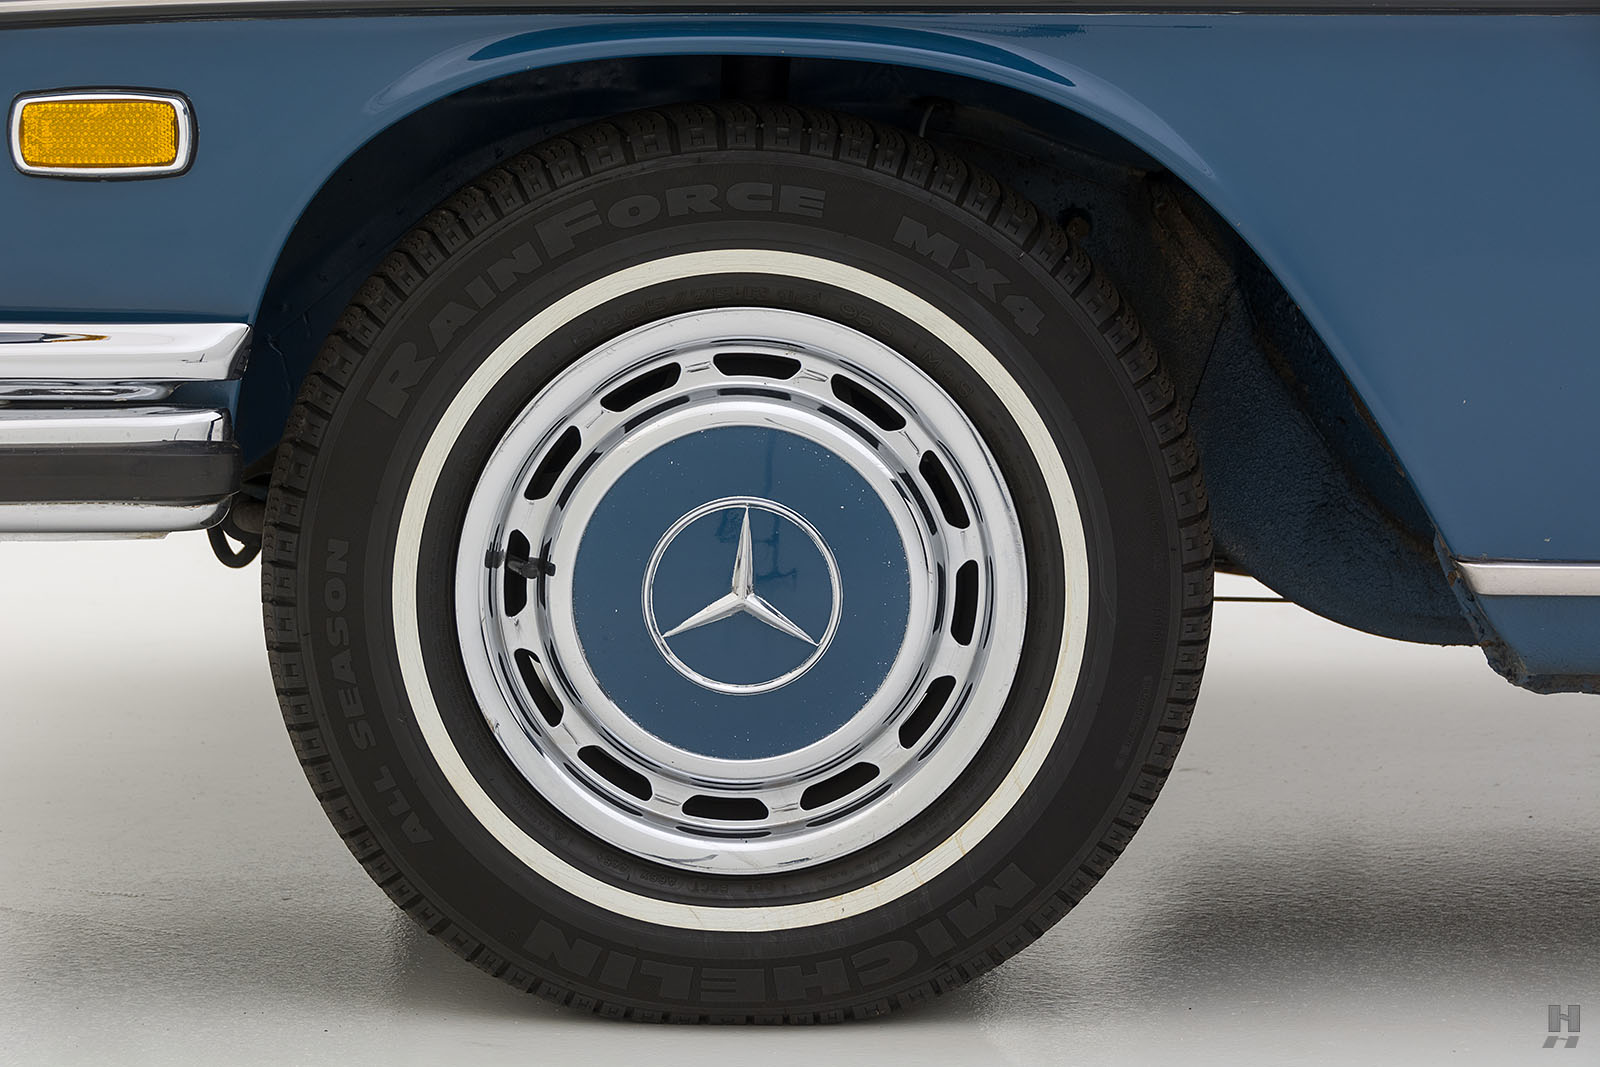 1960 Mercedes-Benz 220Sb